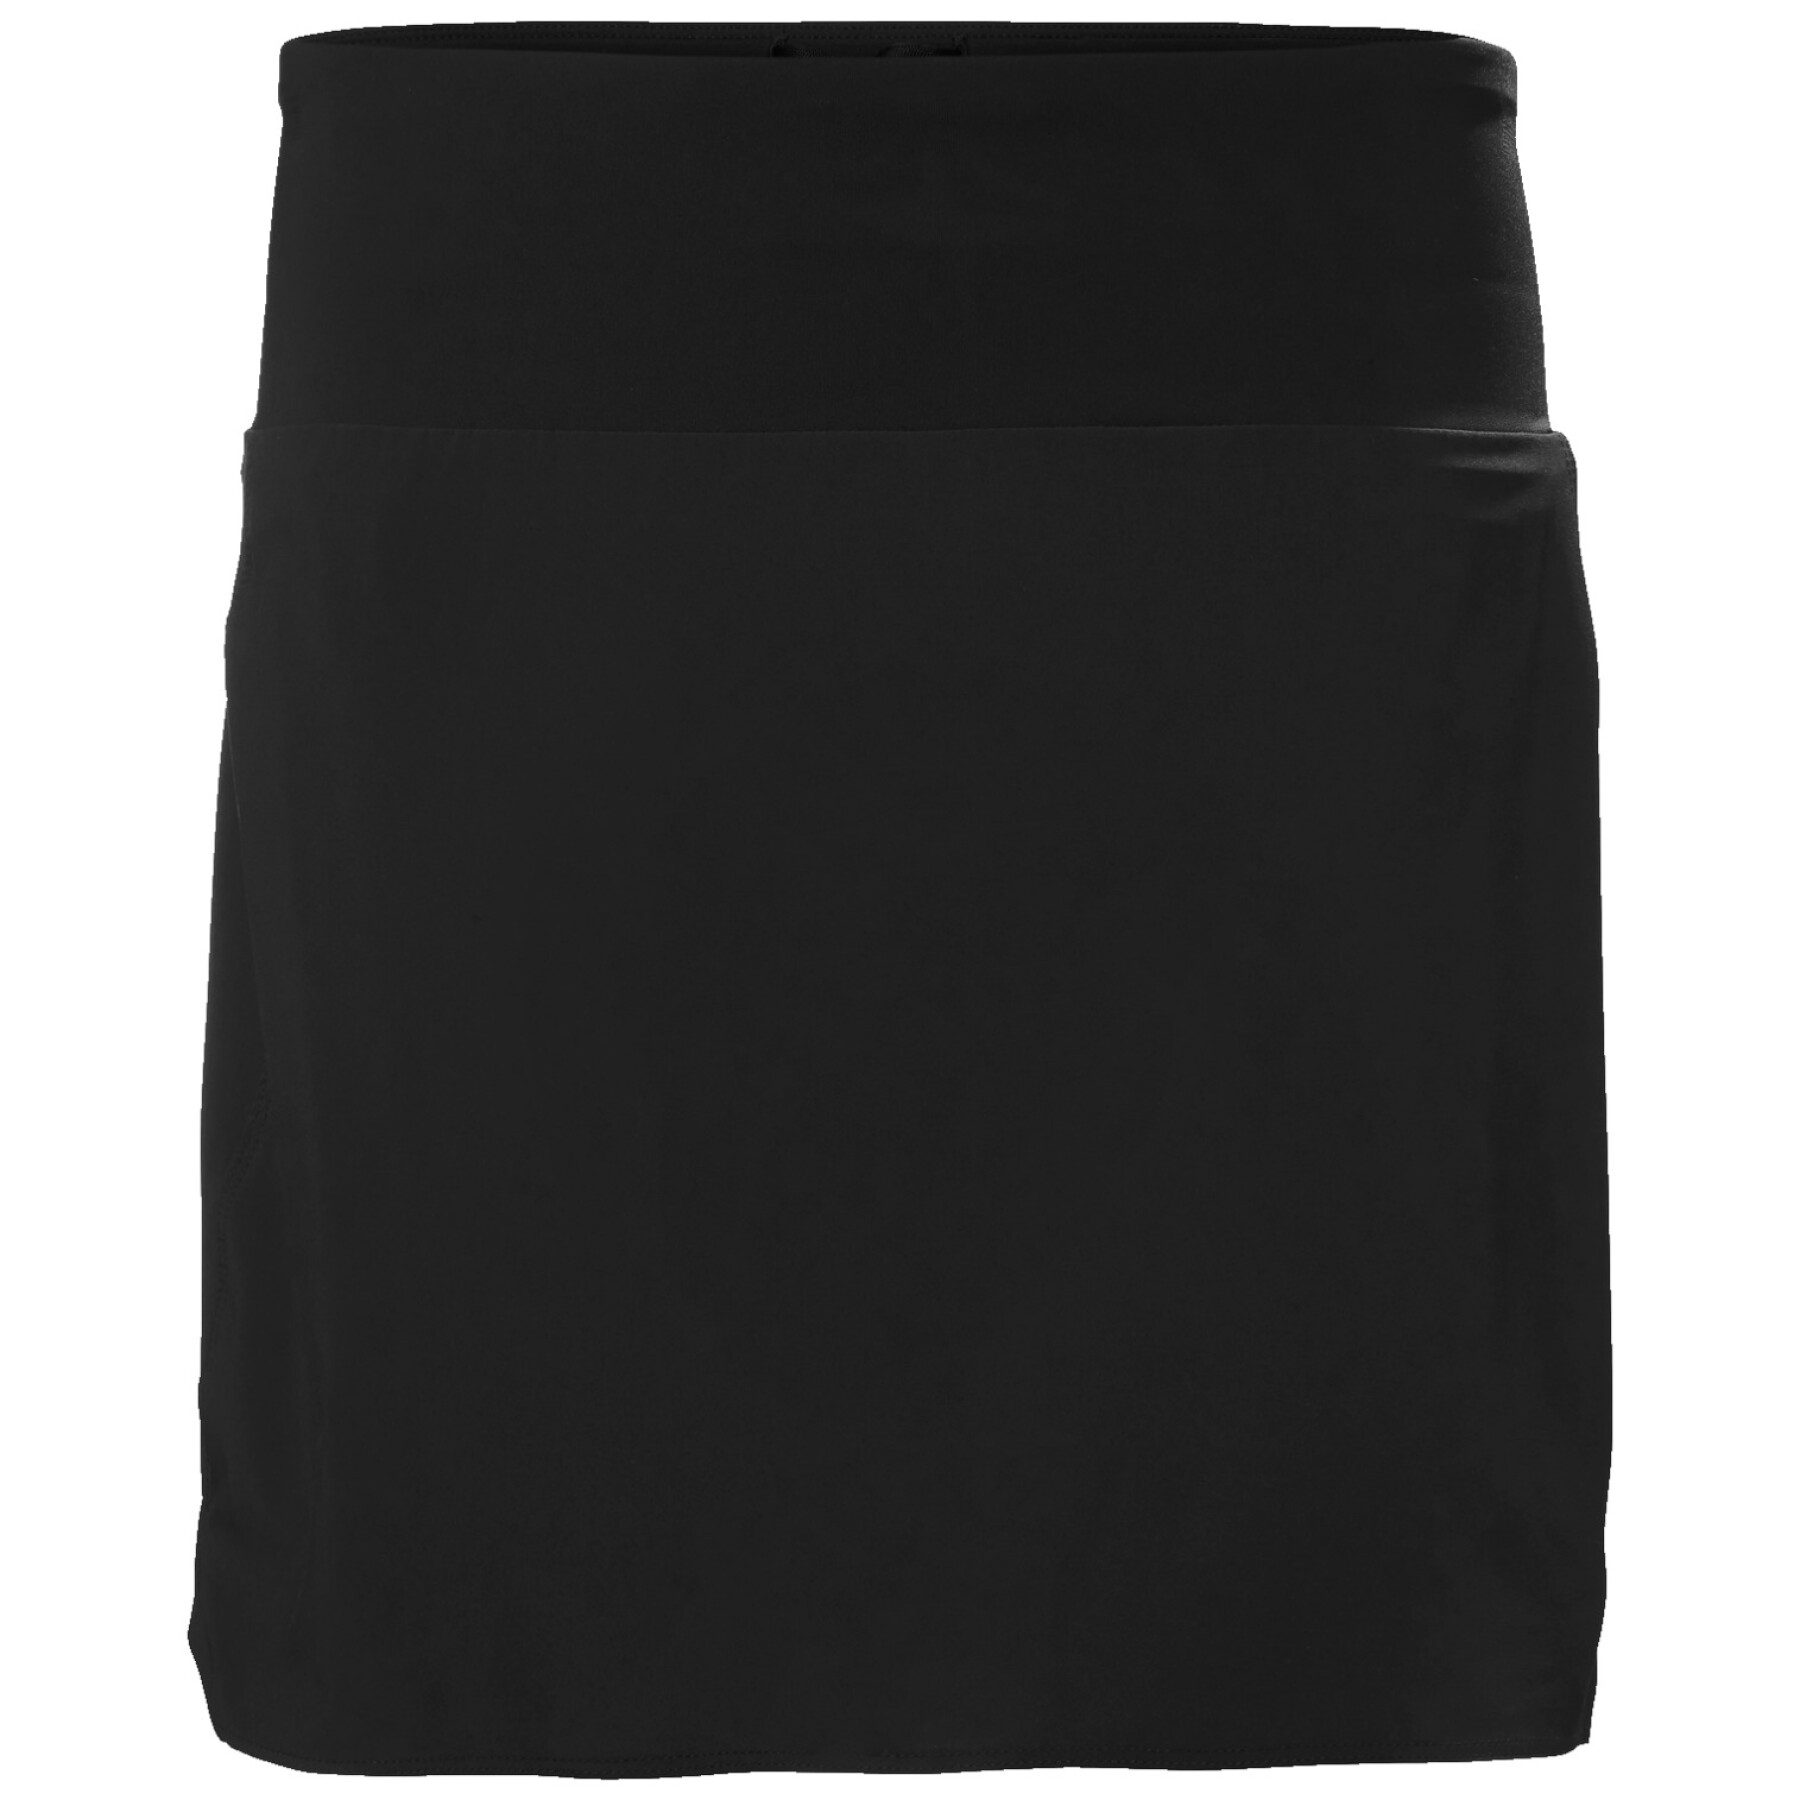 Women's skirt-short Helly Hansen Rask